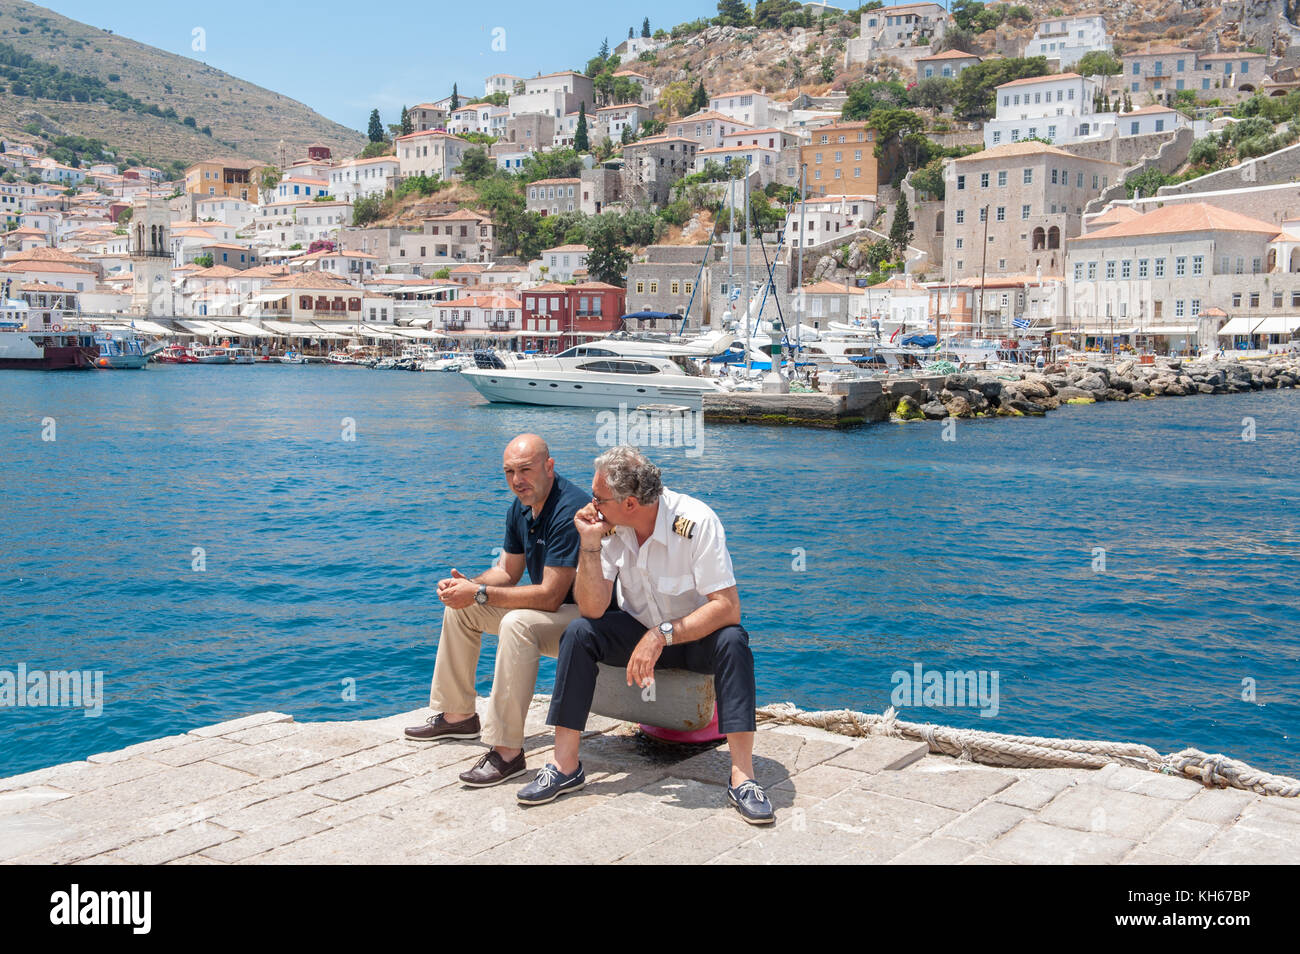 Le personnel du traversier attendent les touristes une hydre, une île grecque dans la mer Egée. hydra est une destination populaire auprès des touristes, mais aussi avec des artistes. Banque D'Images